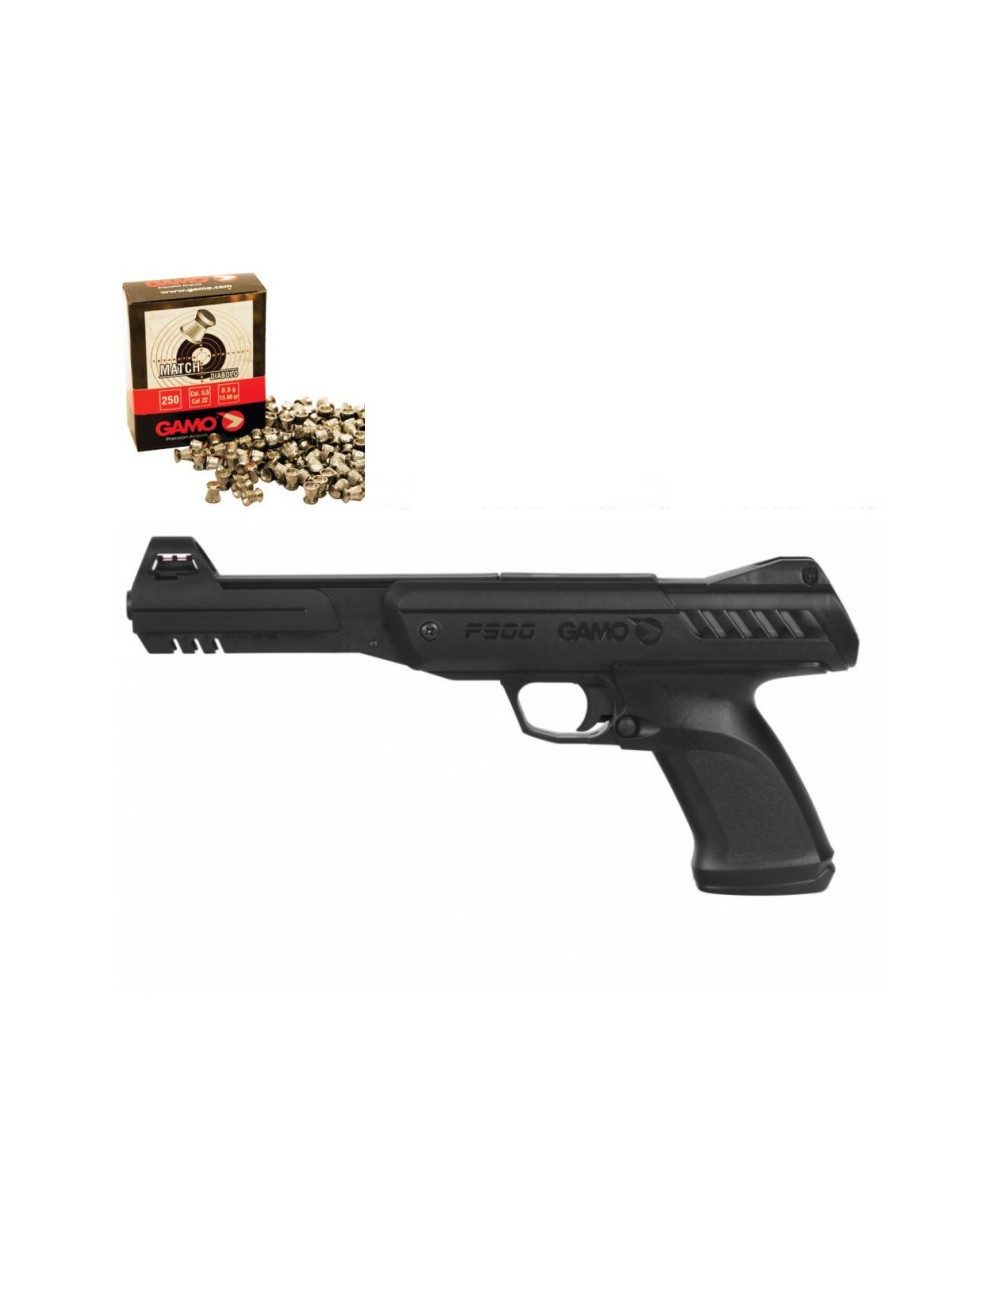 Pistola GAMO P900 IGT Gunset con tragabalines, dianas y balines